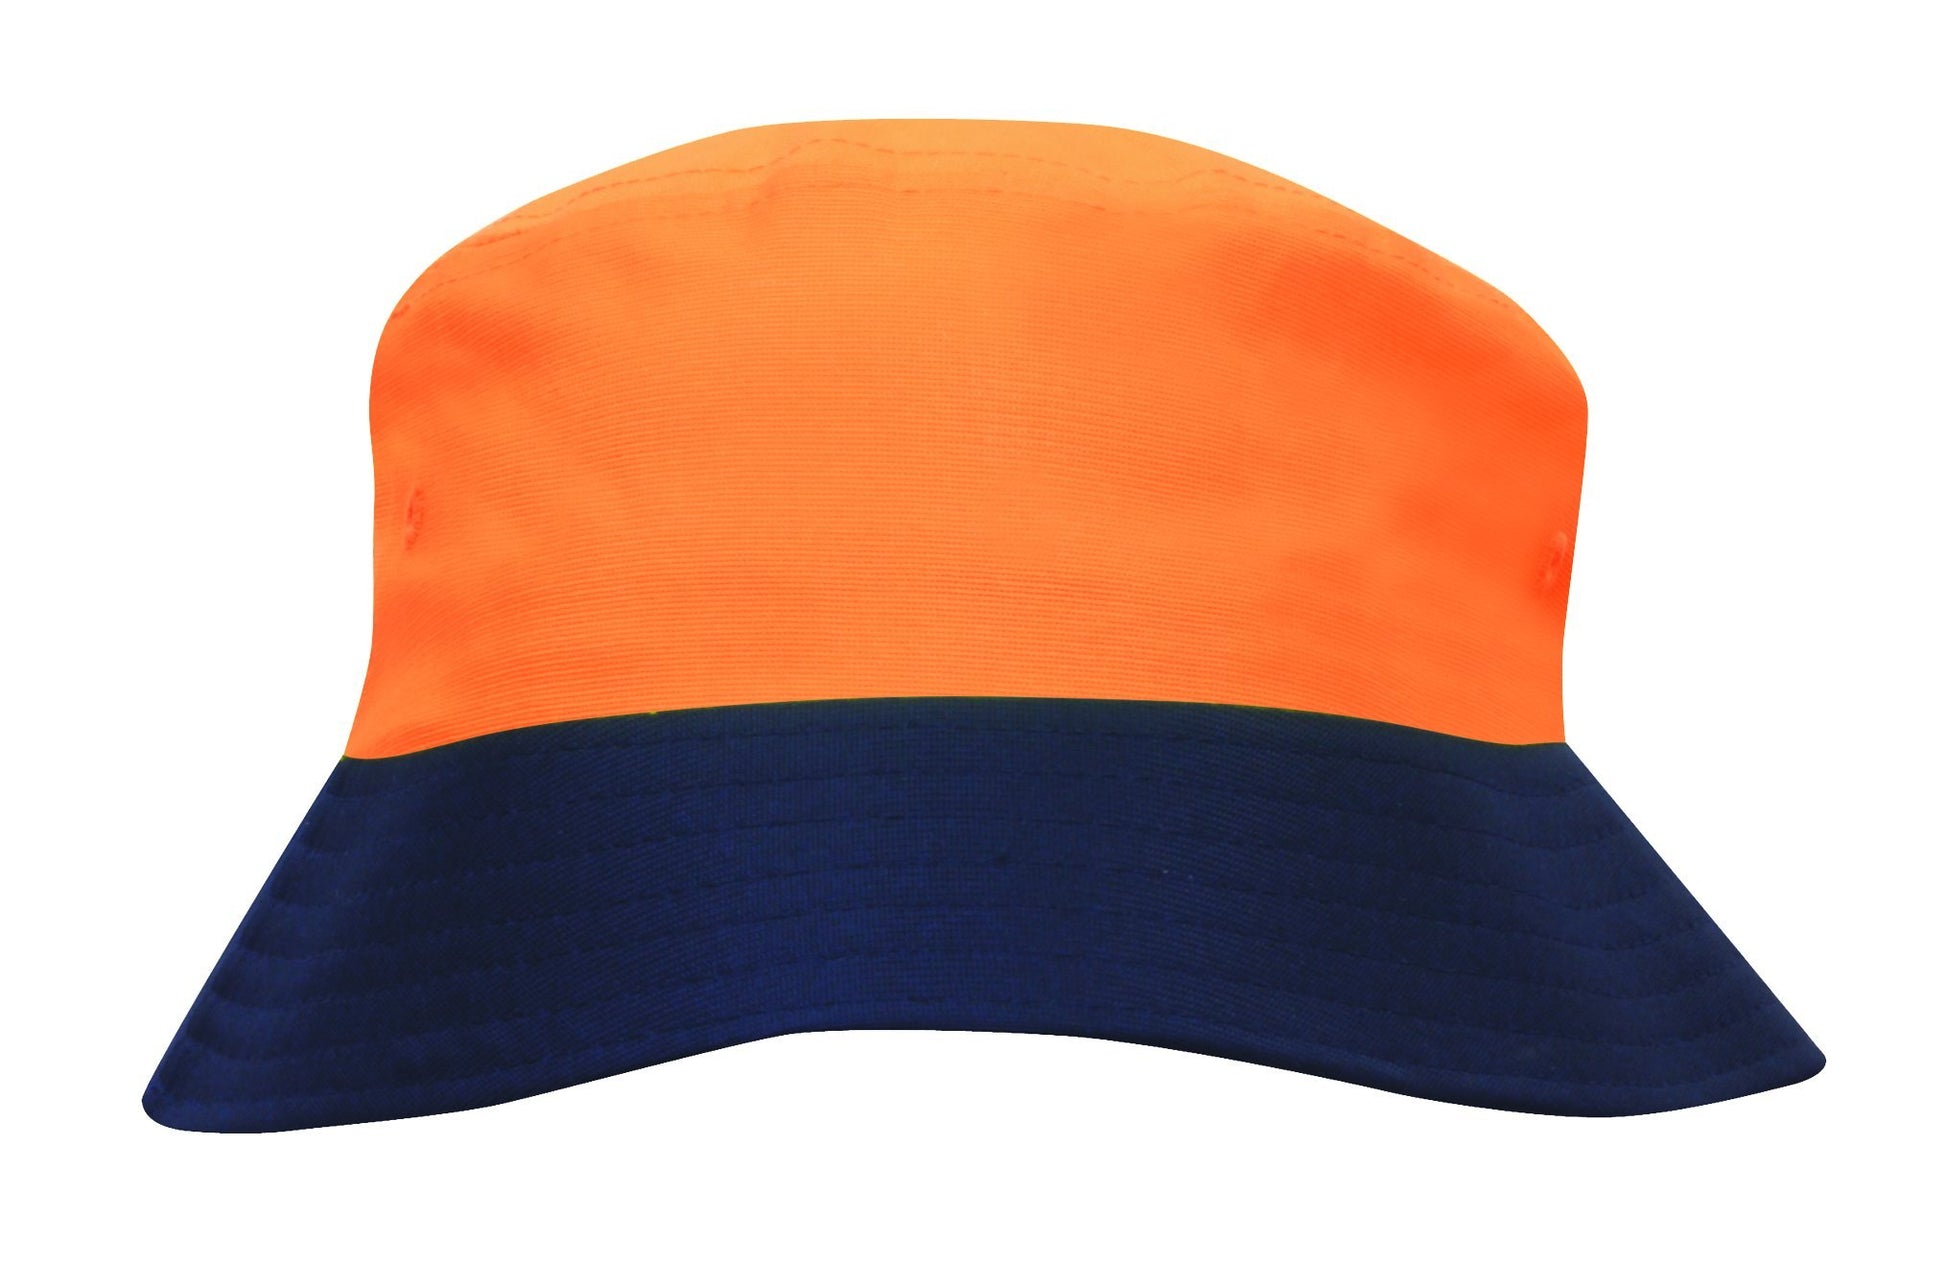 Headwear Luminescent Safety Bucket Hat (3929)